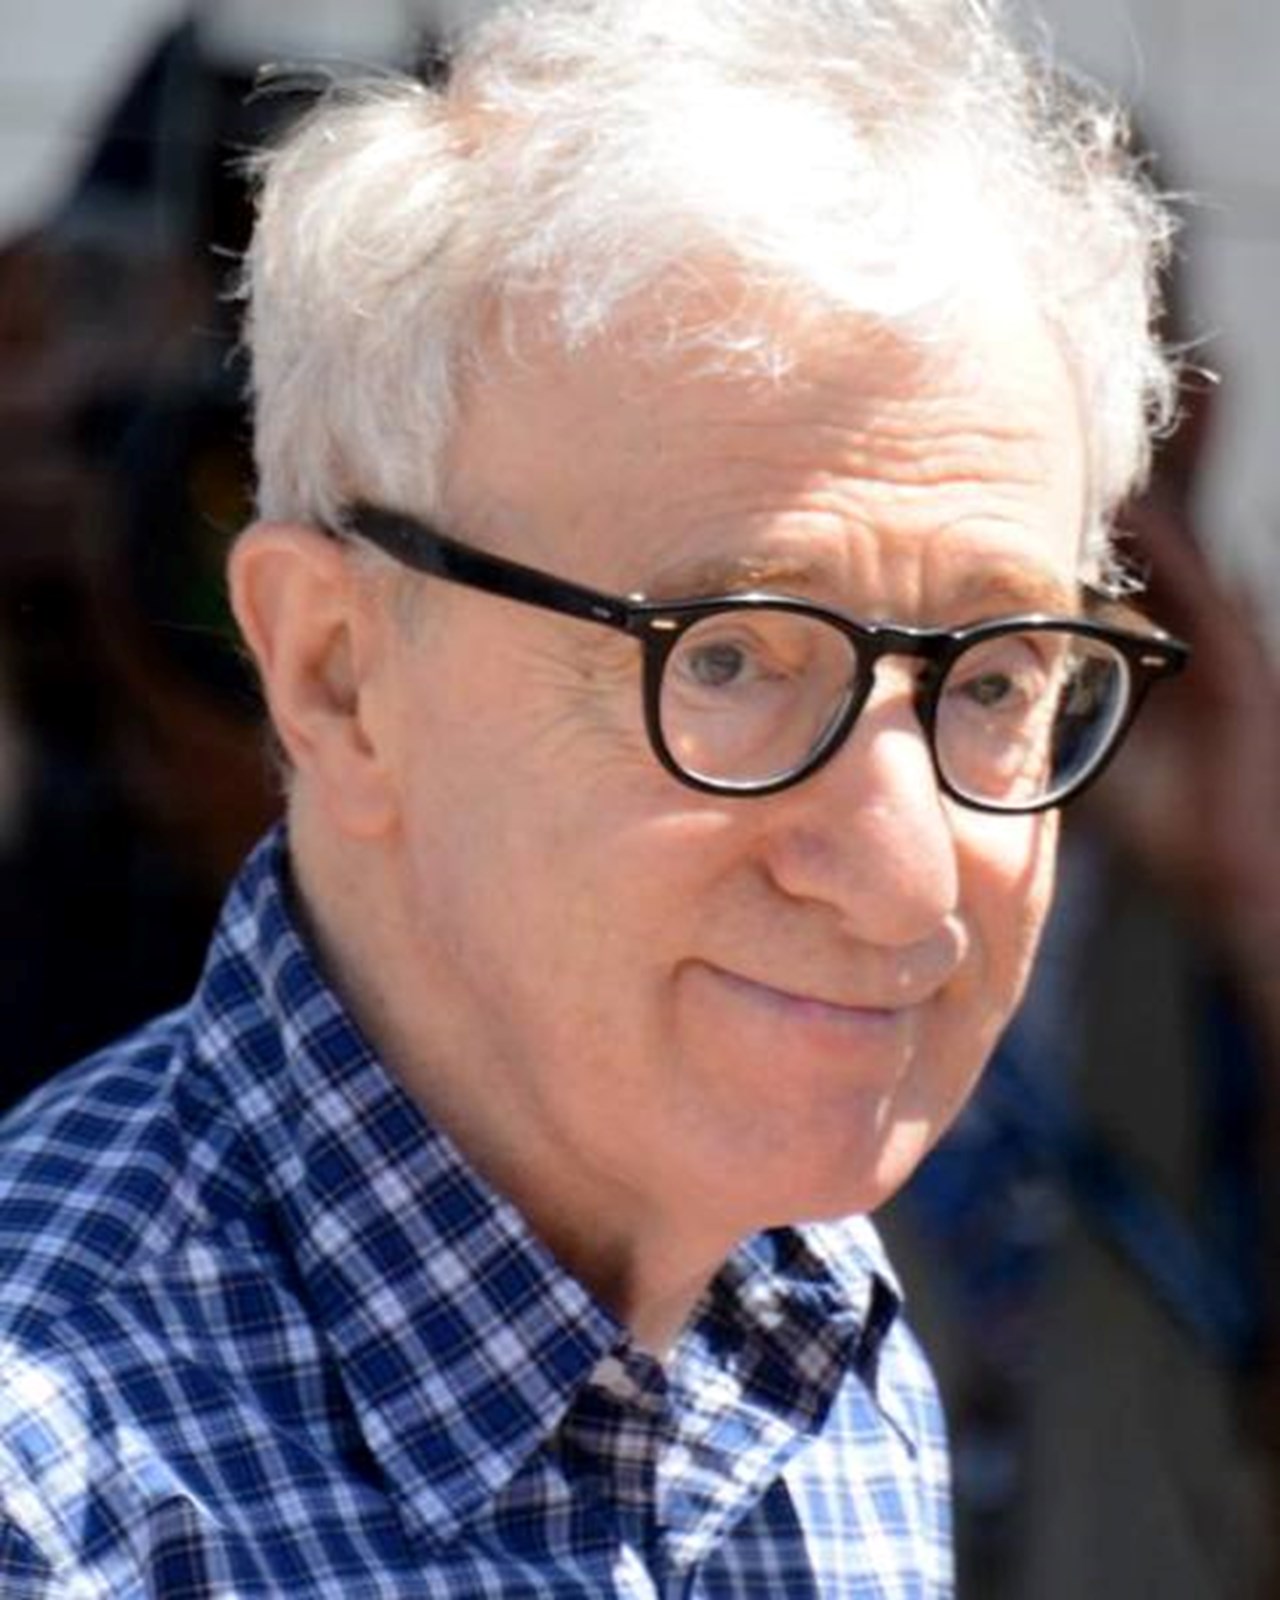 ウッディ・アレン（Woody Allen）は50枚目の映画を披露し、「本当に幸運だった人生」を賞賛しました。 日本の浜口、暗い自然映画などで復活